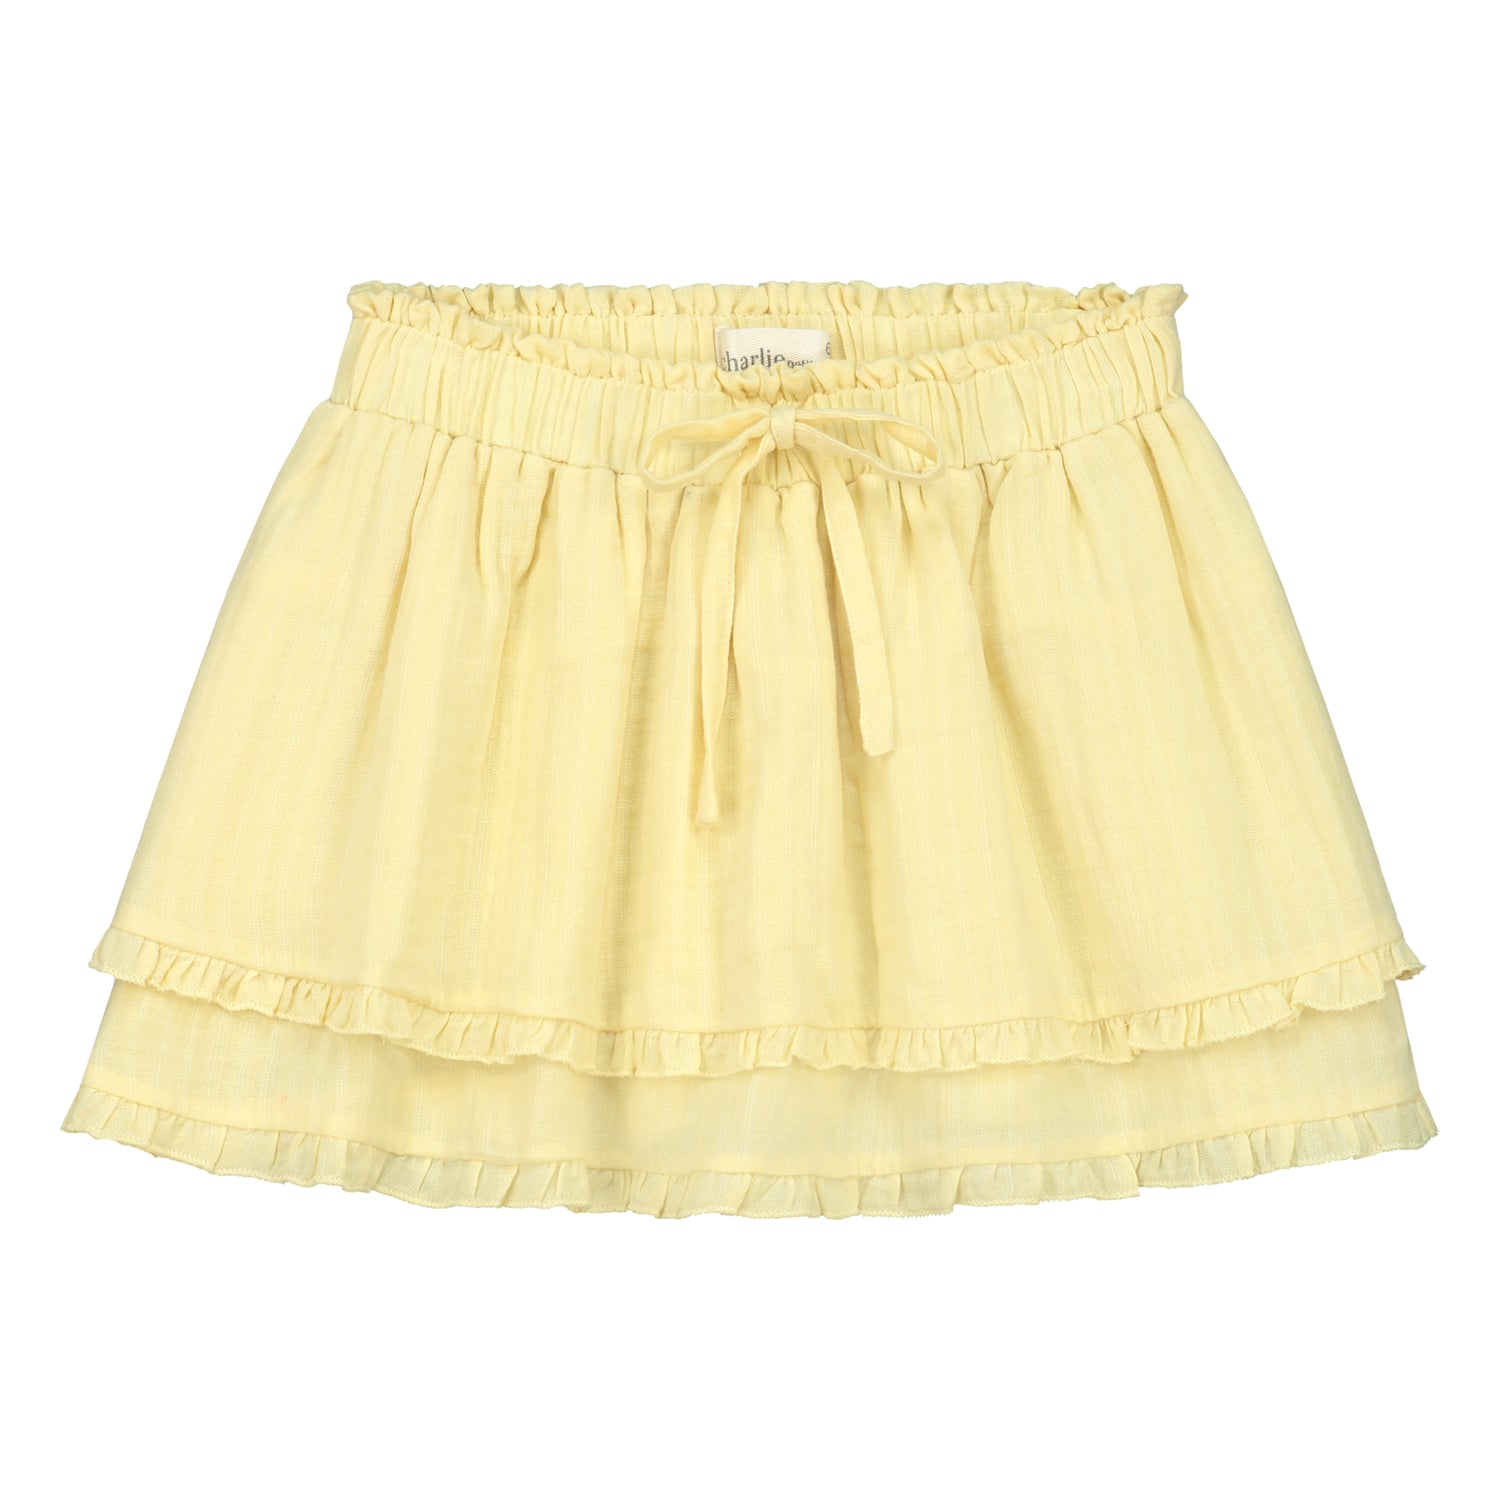 Charlie Petite - iris skirt - yellow